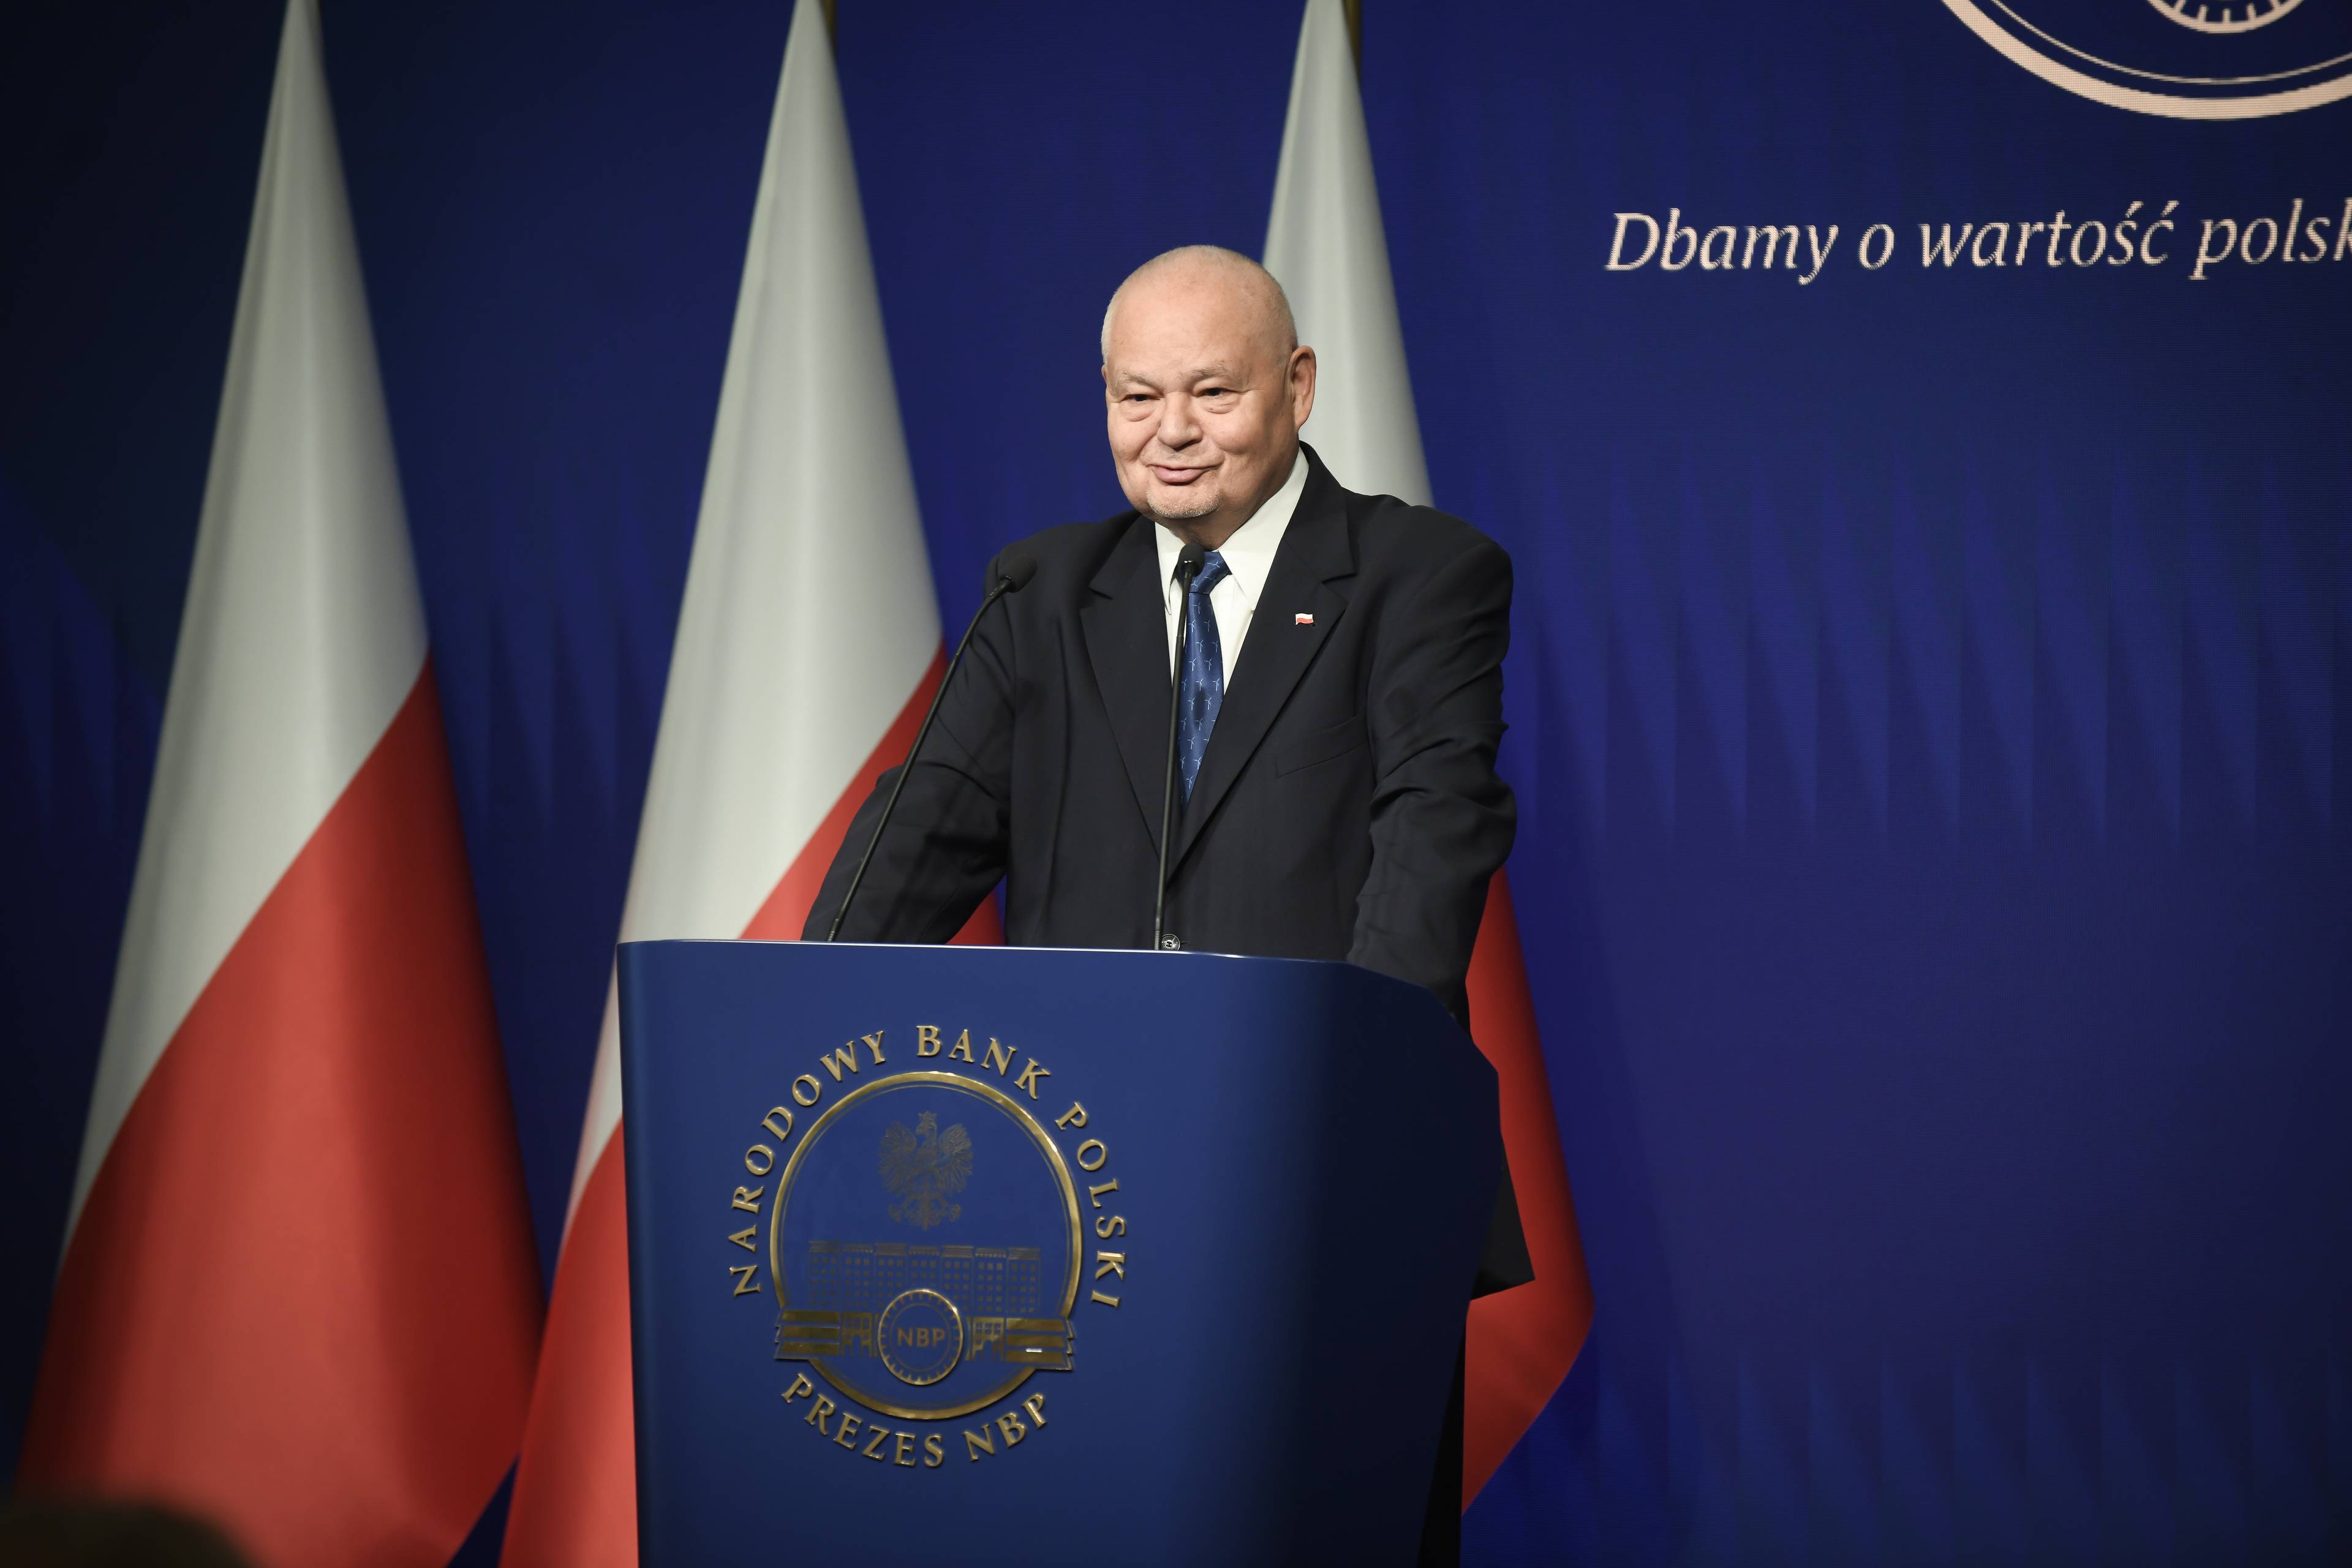 Mężczyzna w garniturze stoi za pulpitem z napisem "Narodowy Bank Polski", w tle stoją trzy polskie flagi